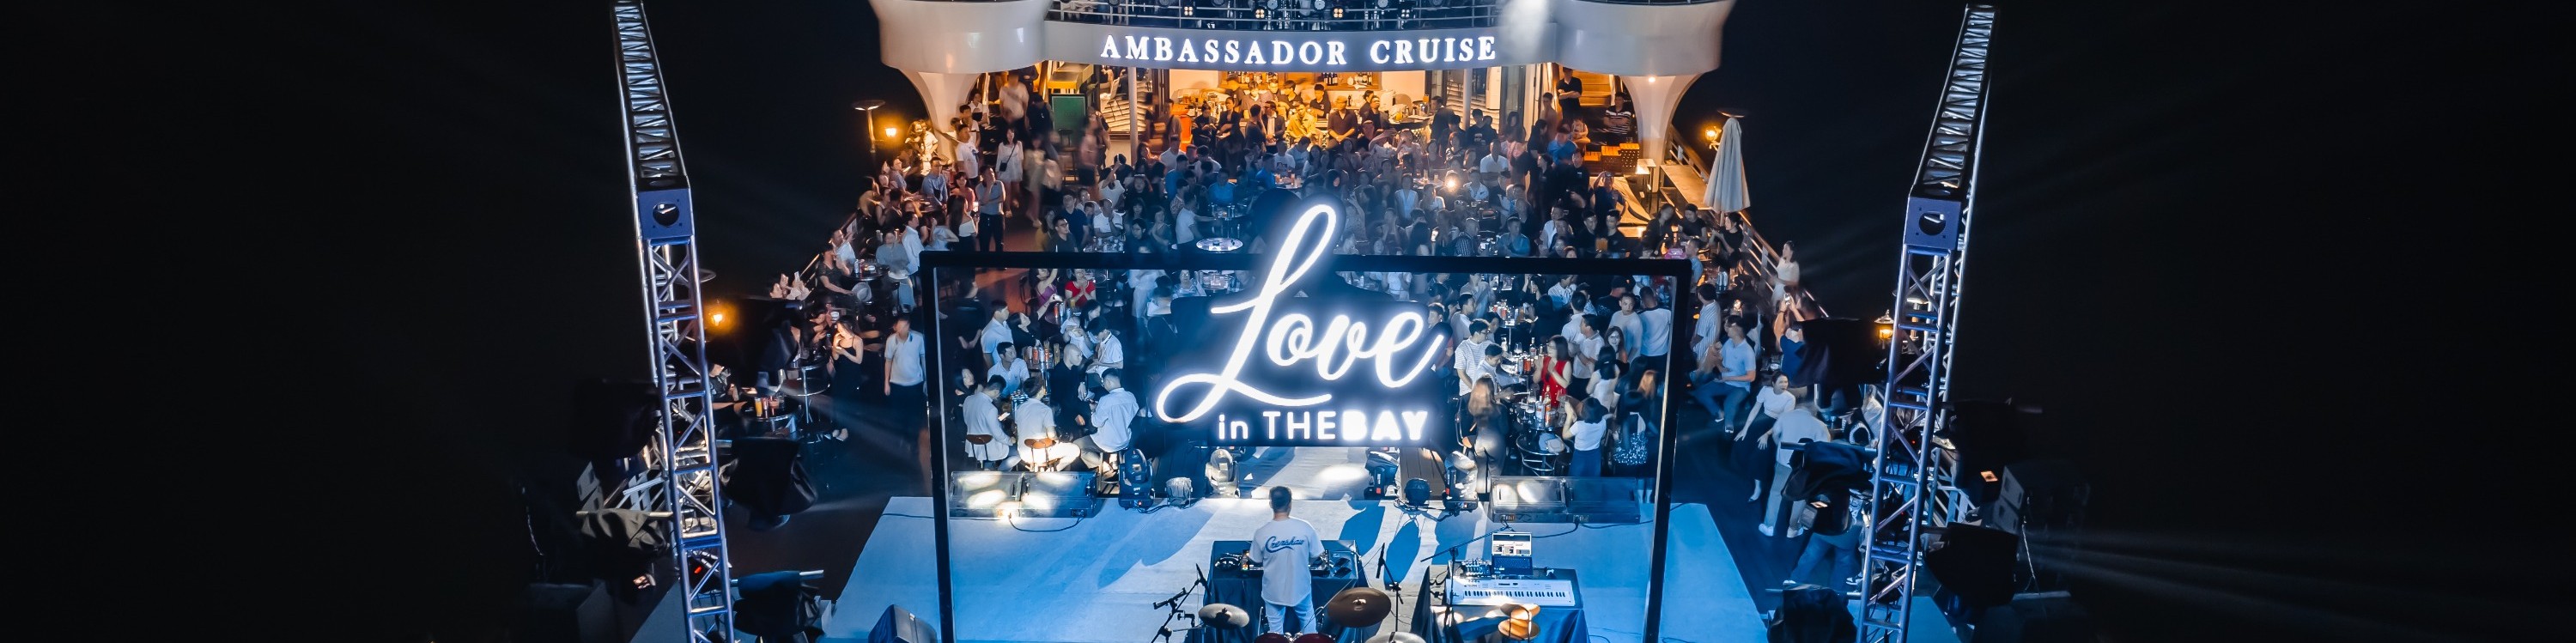 下龍5星豪華遊輪觀光自助餐體驗（Ambassador Cruise 提供）